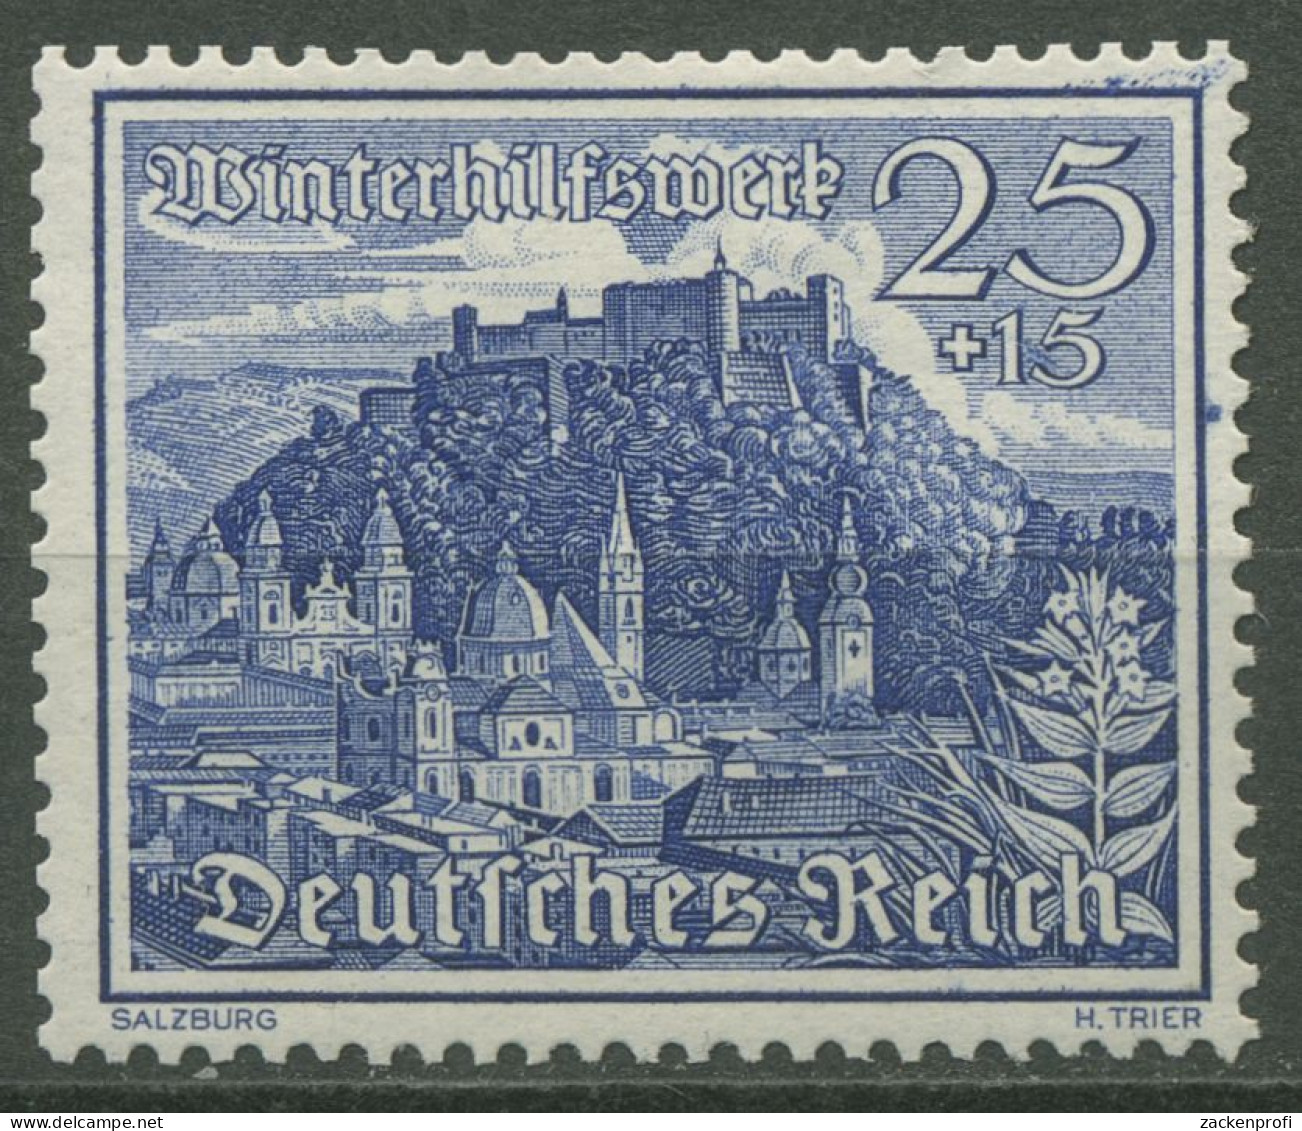 Deutsches Reich 1939 WHW Bauwerke 737 Postfrisch (R80727) - Unused Stamps